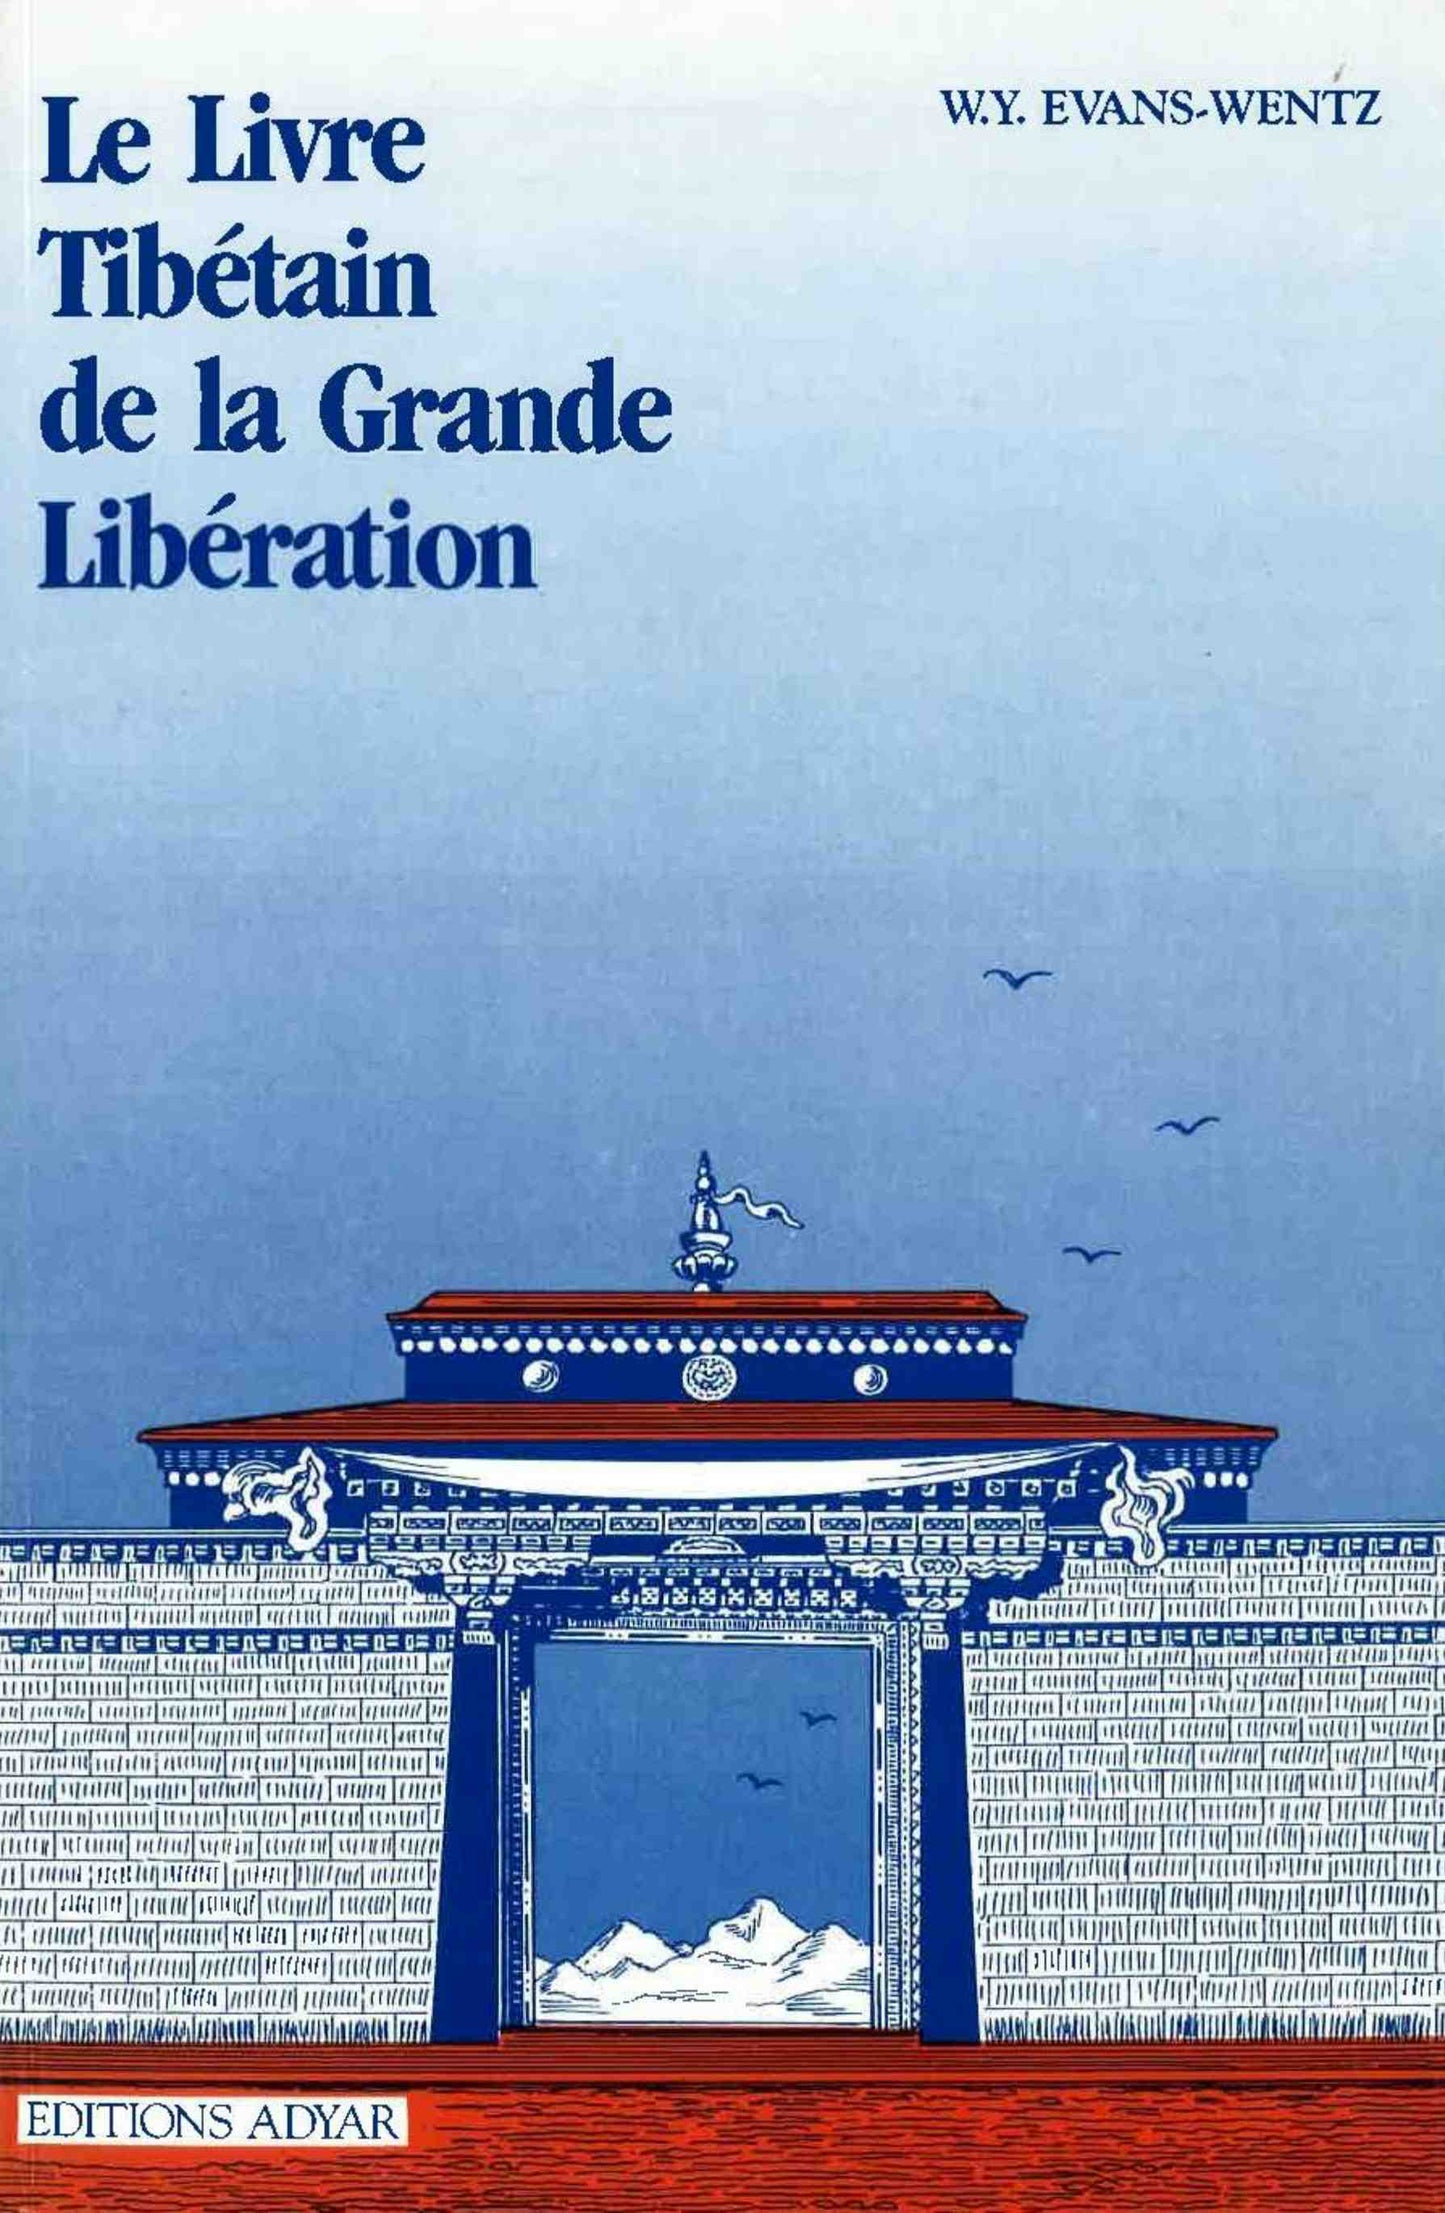 Le Livre tibétain de la grande Libération